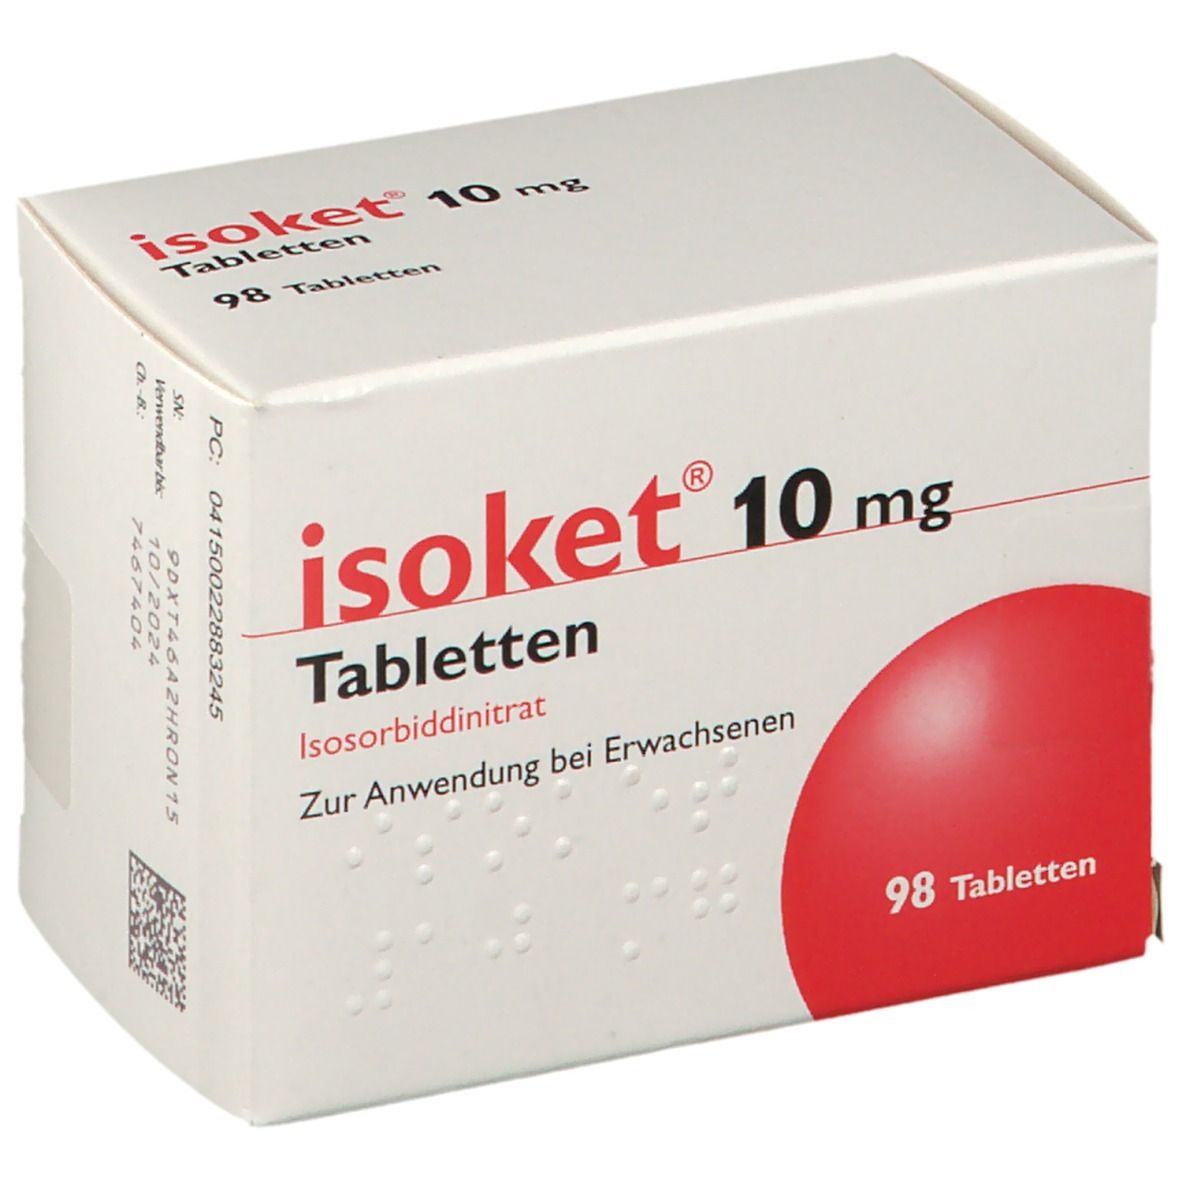 isoket® 10 mg